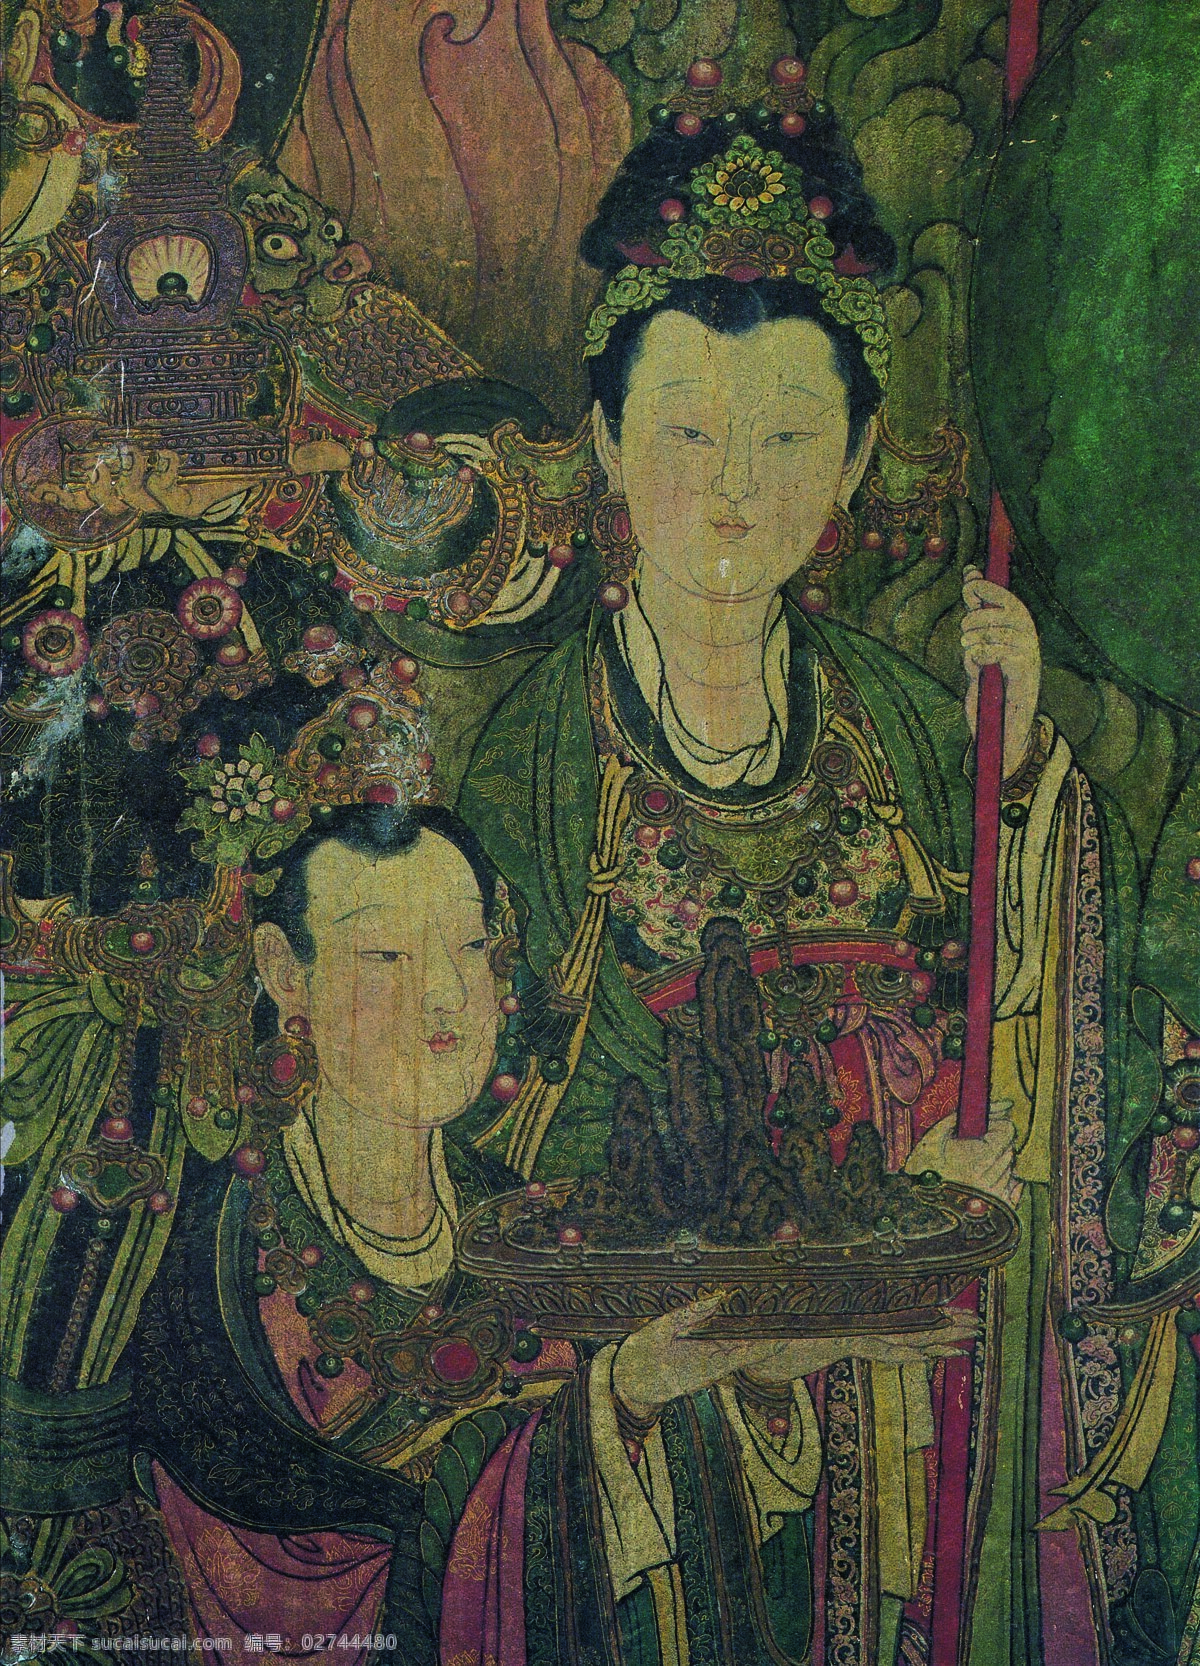 法海 寺 壁画 举 幡 侍女 帝 释 天 二 人 设计素材 中国古典 壁画世界 书画美术 灰色